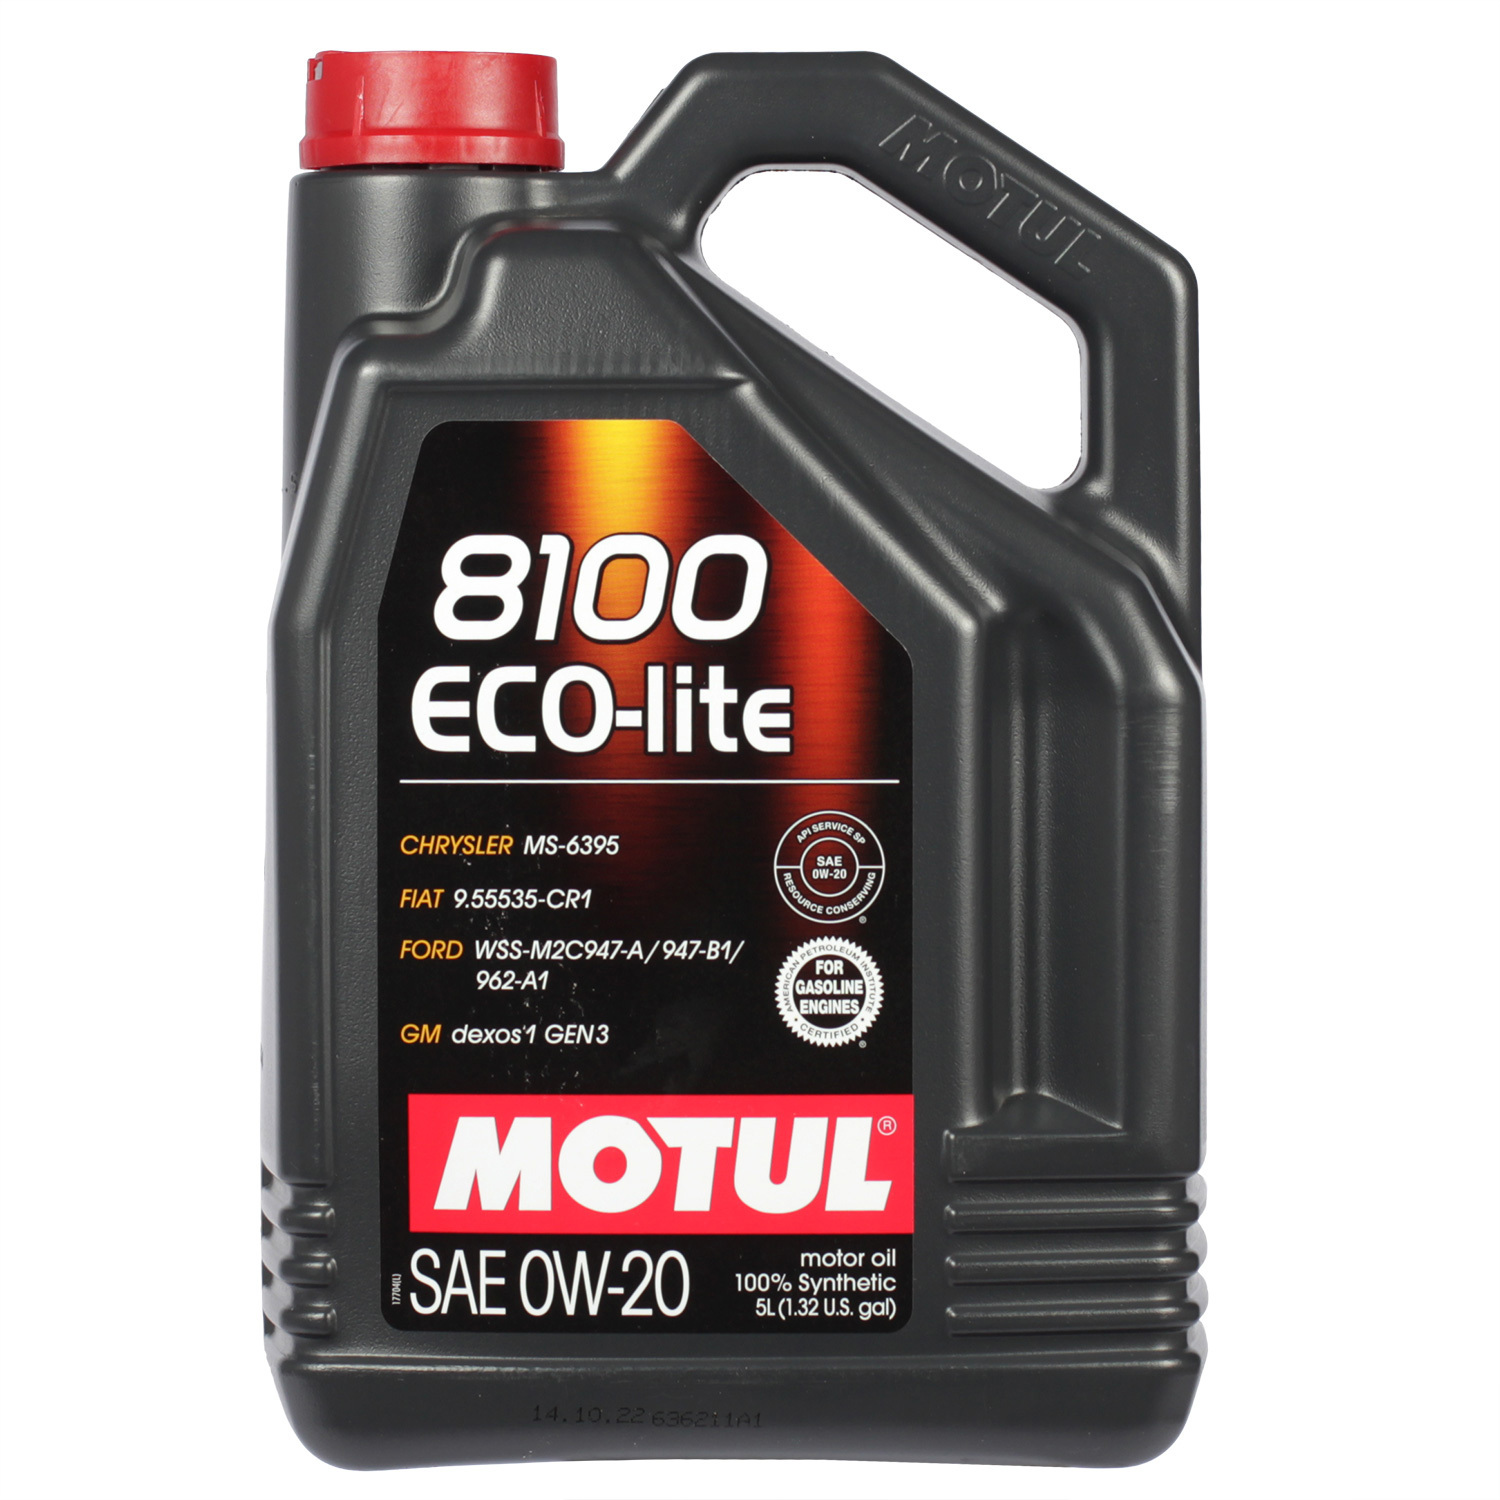 Motul Моторное масло Motul 8100 Eco-lite 0W-20, 5 л масло моторное motul 8100 eco lite 0w 20 синтетическое 208 л